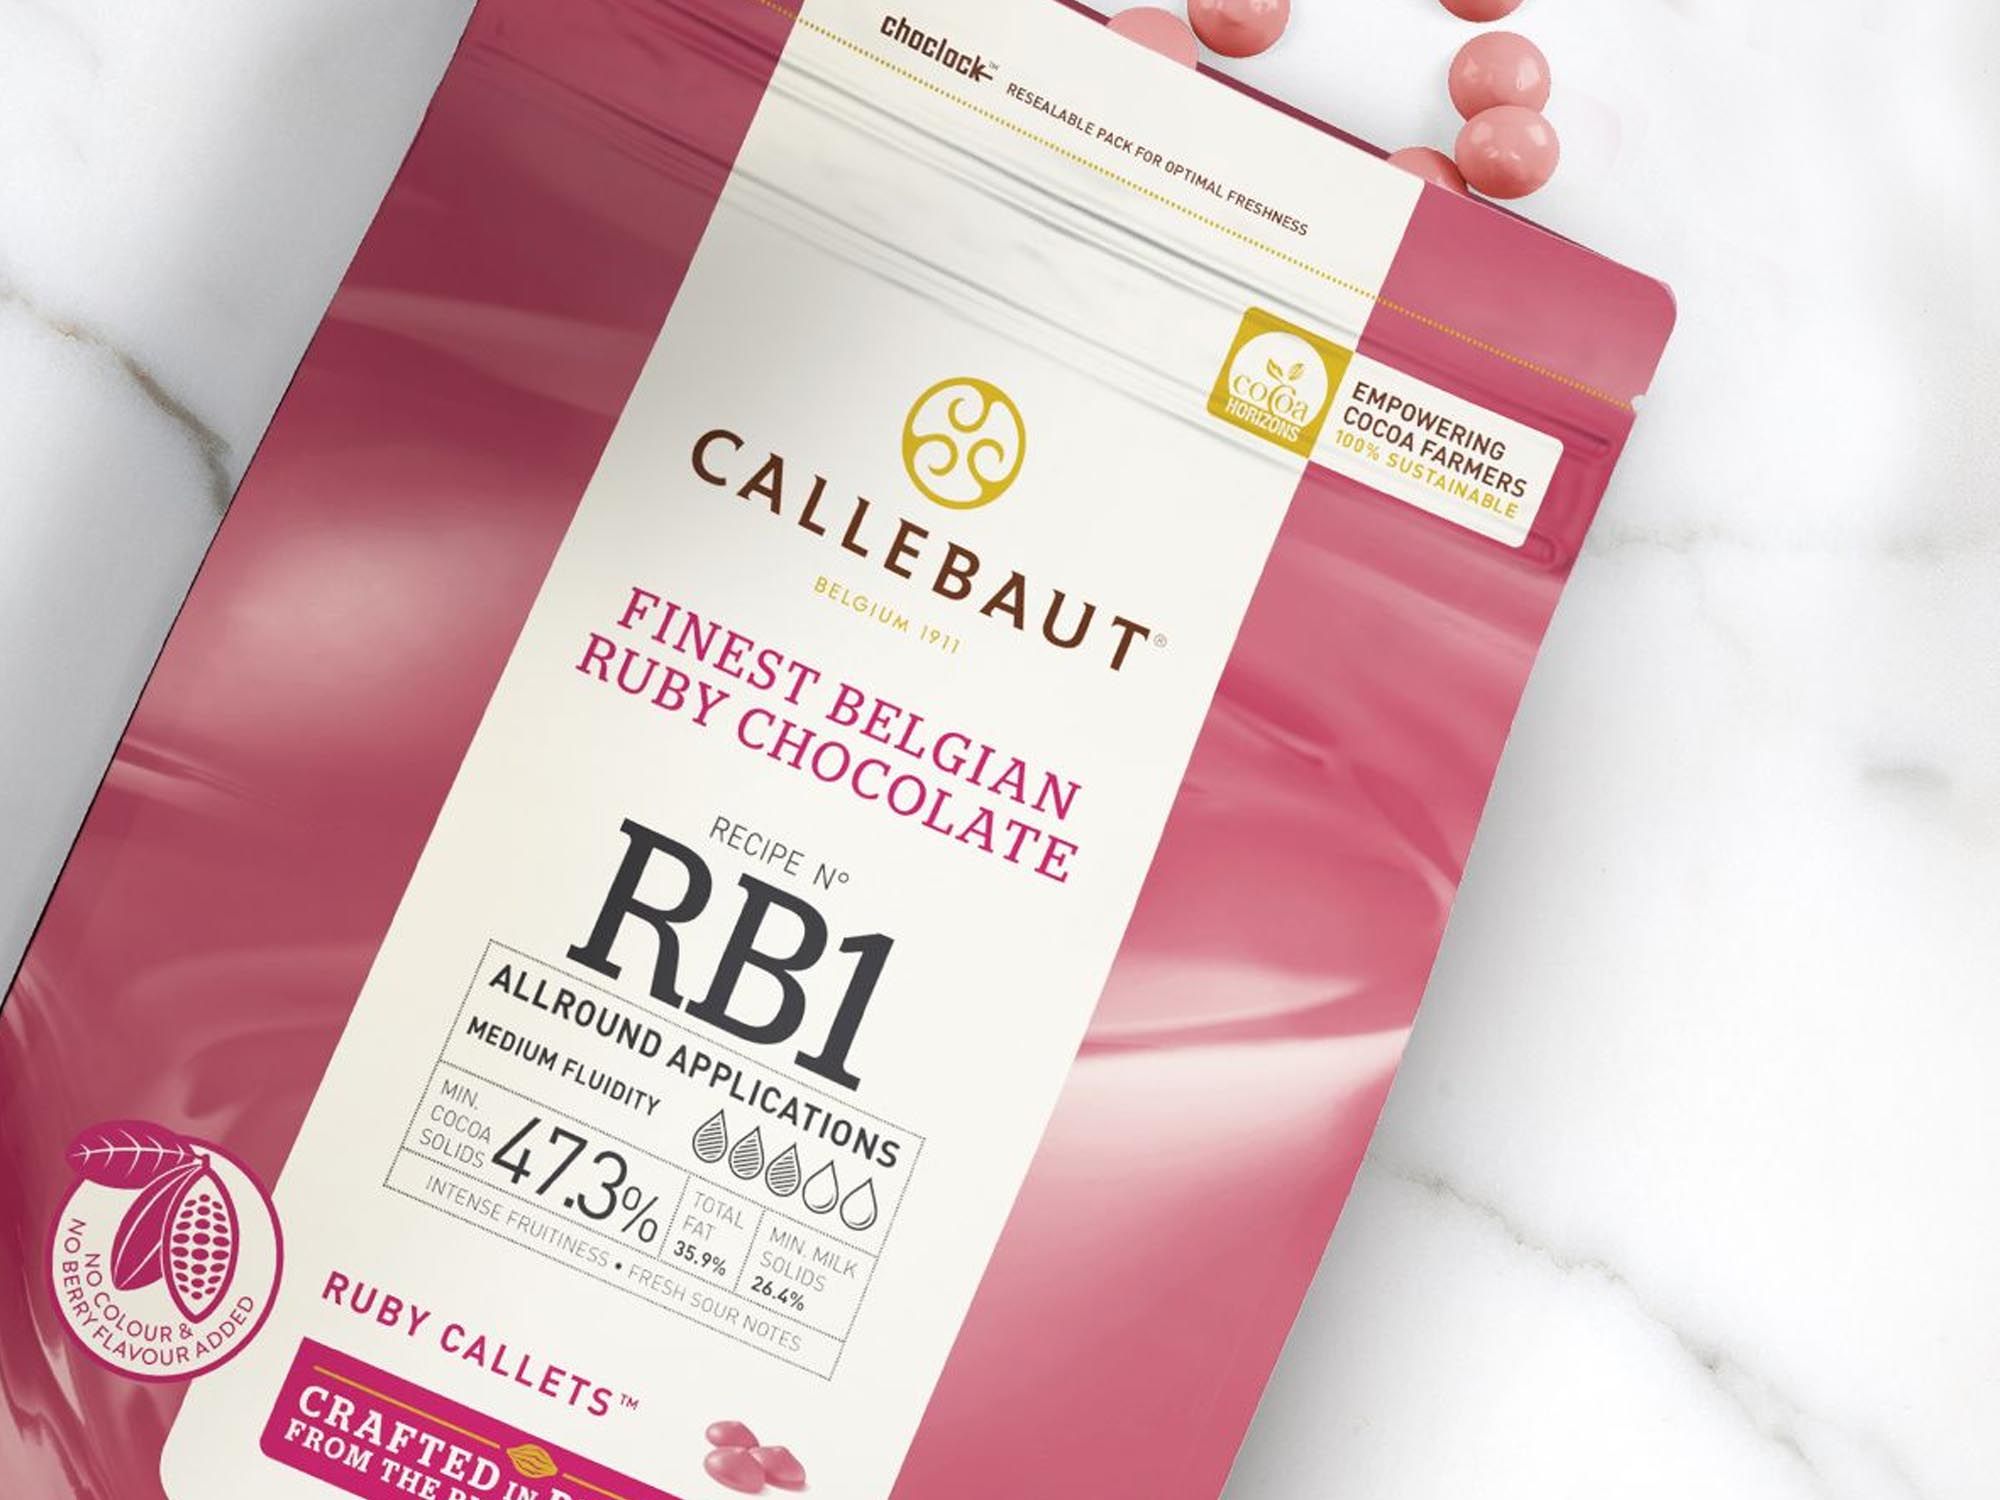 Schokolade Callebaut Ruby Rosa Callets 400g Beispiel